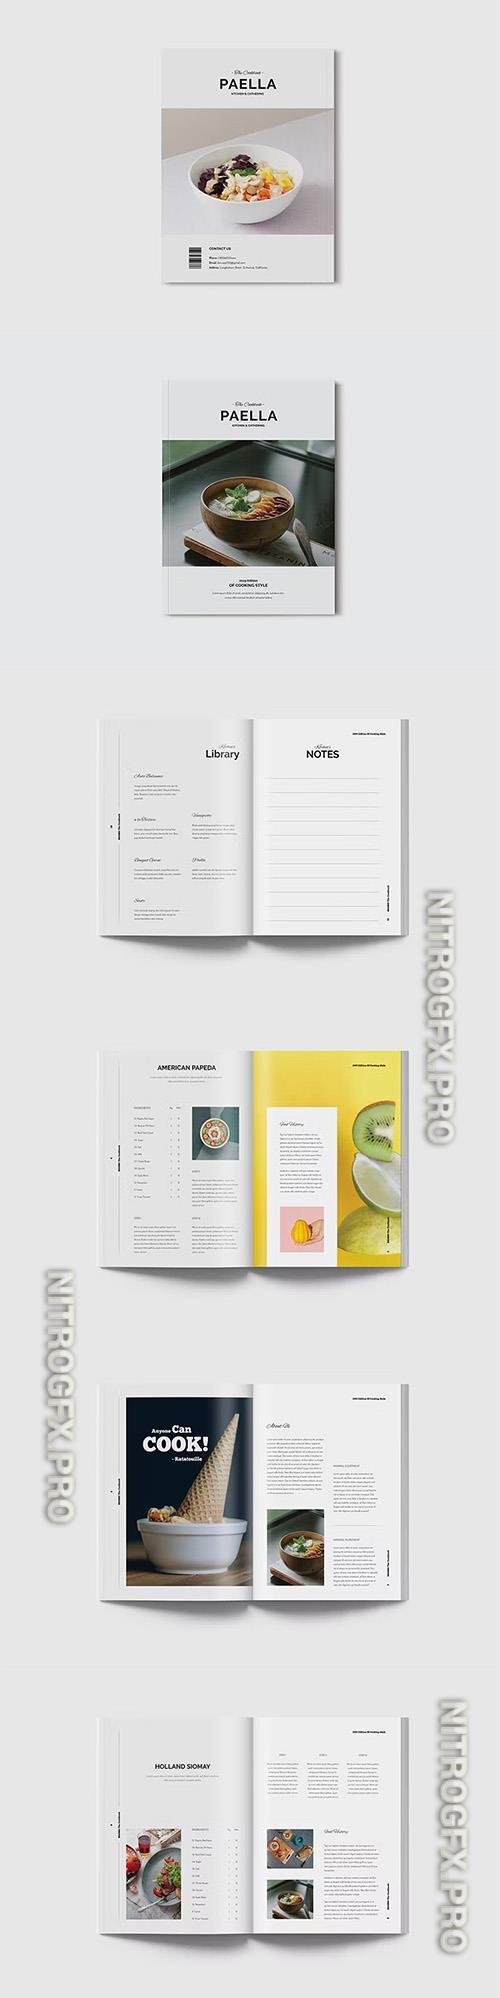 Cookbook / Recipebook Template INDD